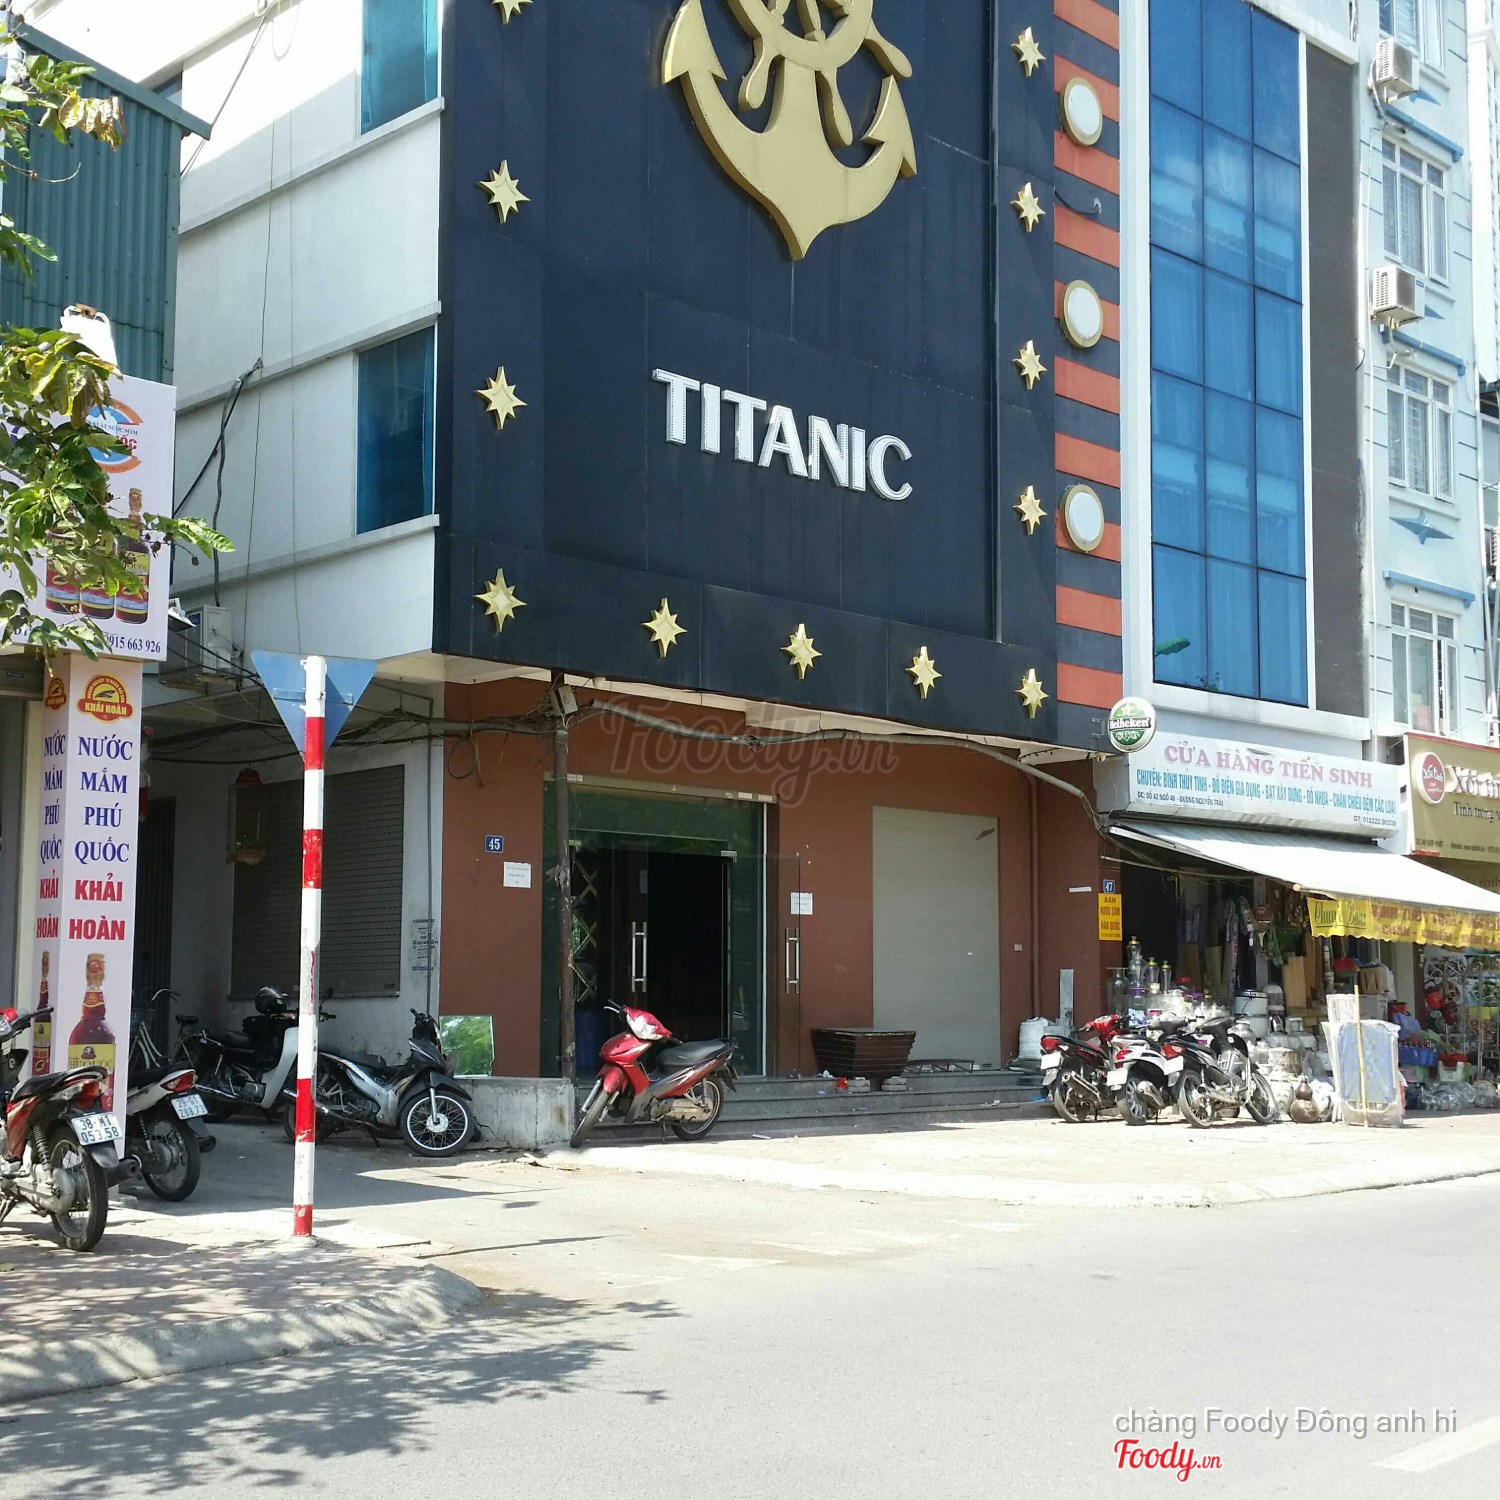 Titanic Karaoke - Giáp Nhất Ở Quận Thanh Xuân, Hà Nội | Album Ảnh | Titanic  Karaoke - Giáp Nhất | Foody.Vn